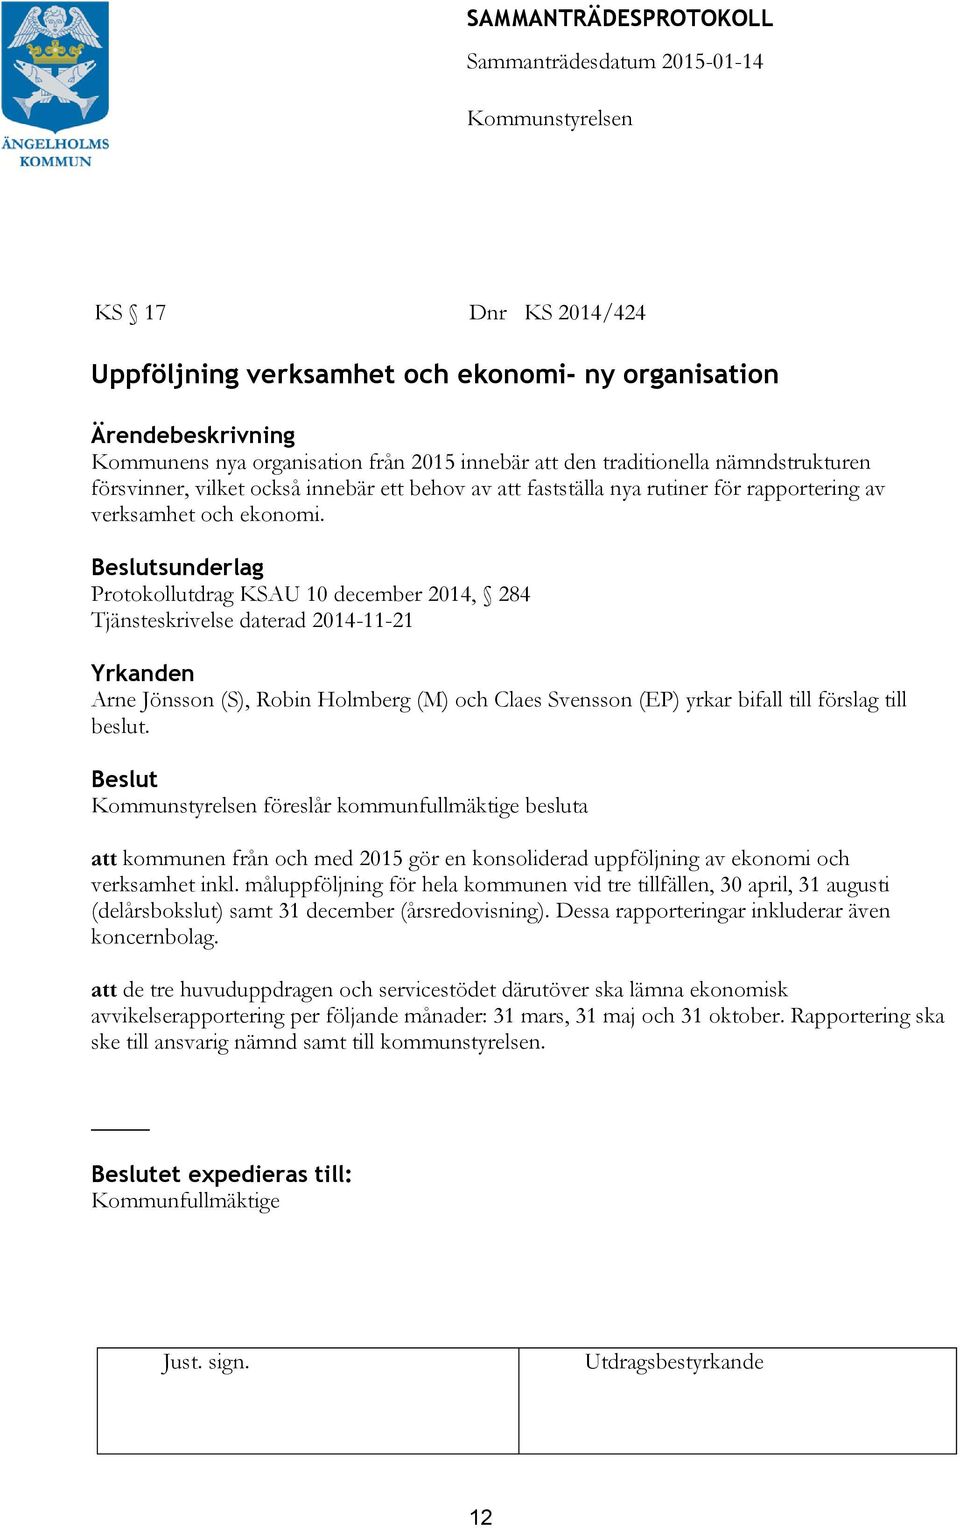 sunderlag Protokollutdrag KSAU 10 december 2014, 284 Tjänsteskrivelse daterad 2014-11-21 Arne Jönsson (S), Robin Holmberg (M) och Claes Svensson (EP) yrkar bifall till förslag till beslut.